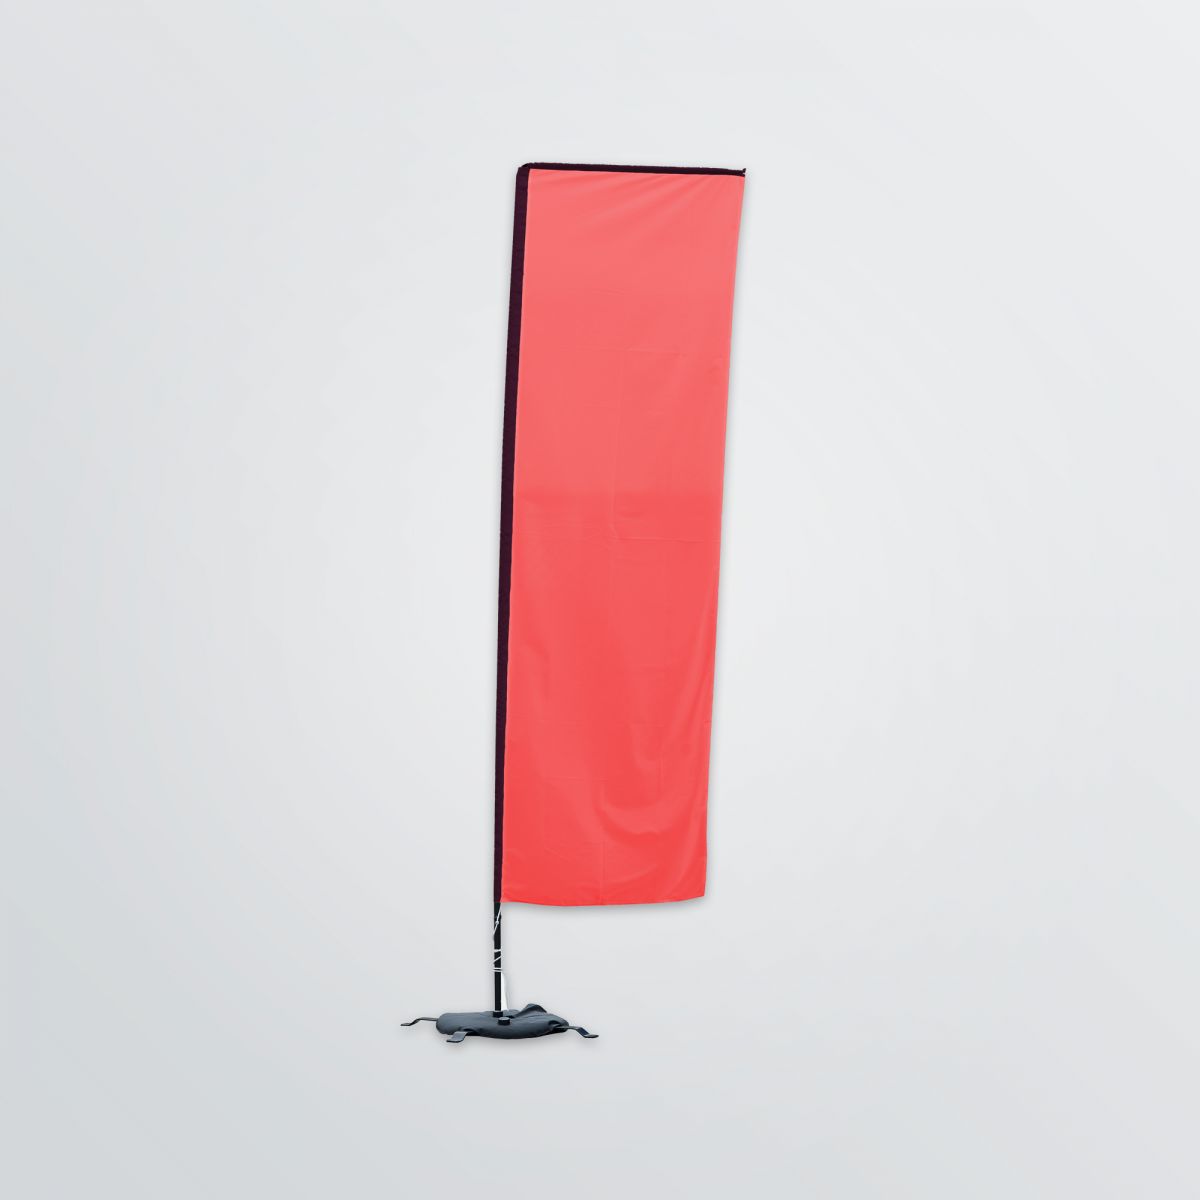 Individualisierbare Beachflag in Rechteckform zum Aufstellen als Frontansicht - Farbbeispiel rot